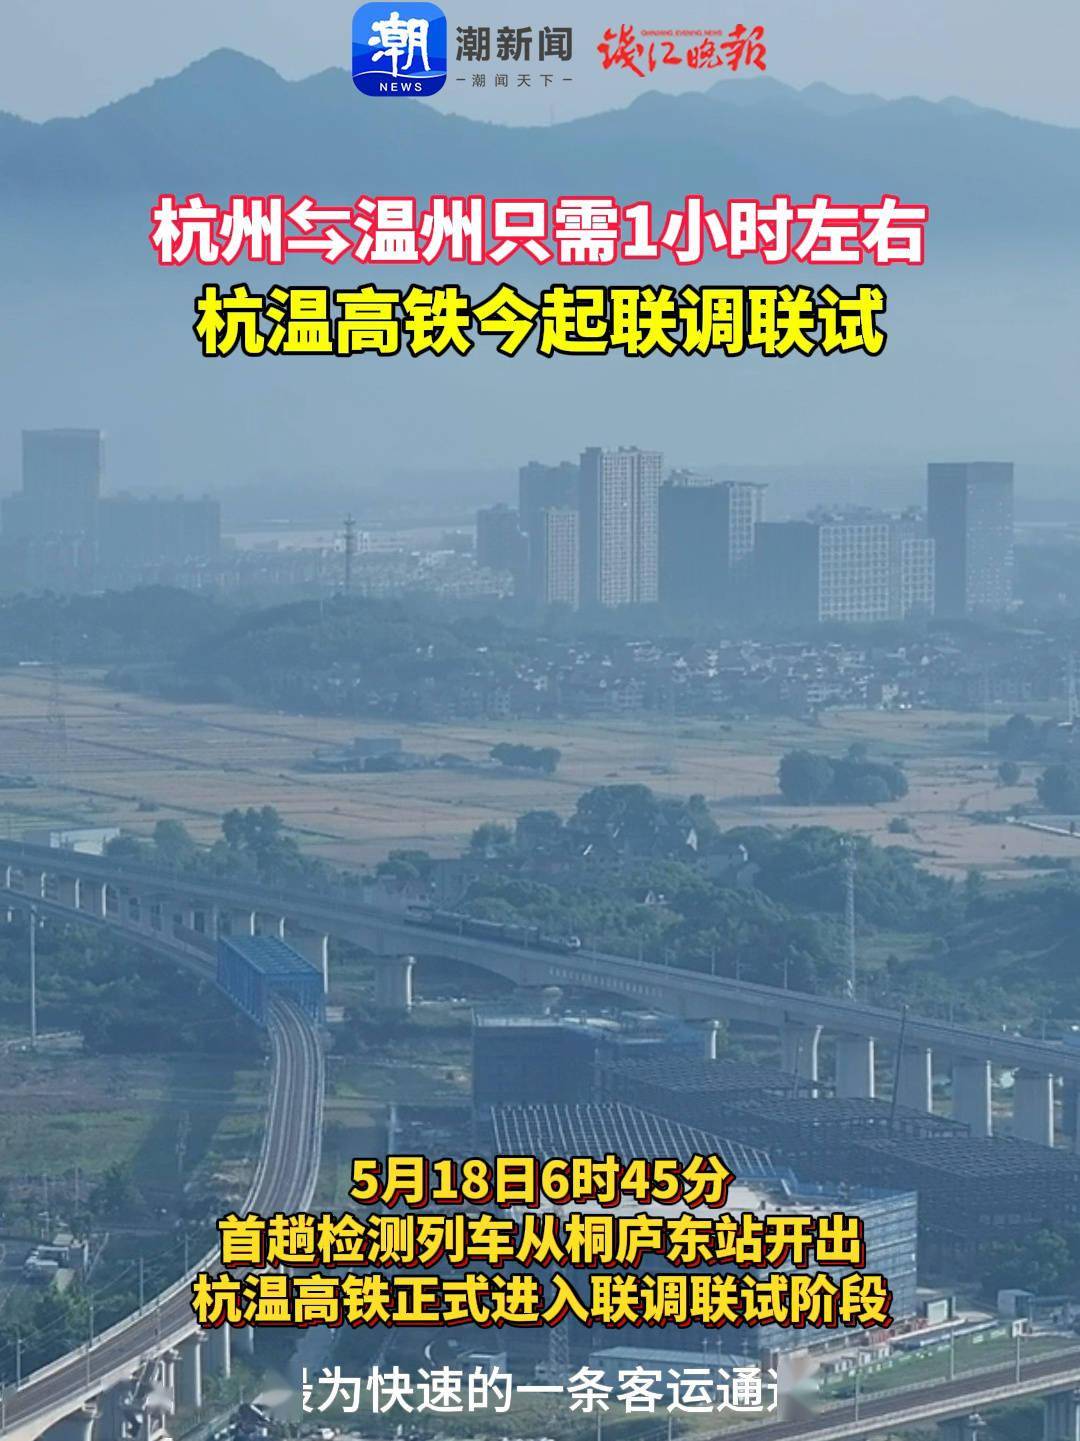 杭温高铁开启联调联试,建成后杭州到温州 1 小时到达